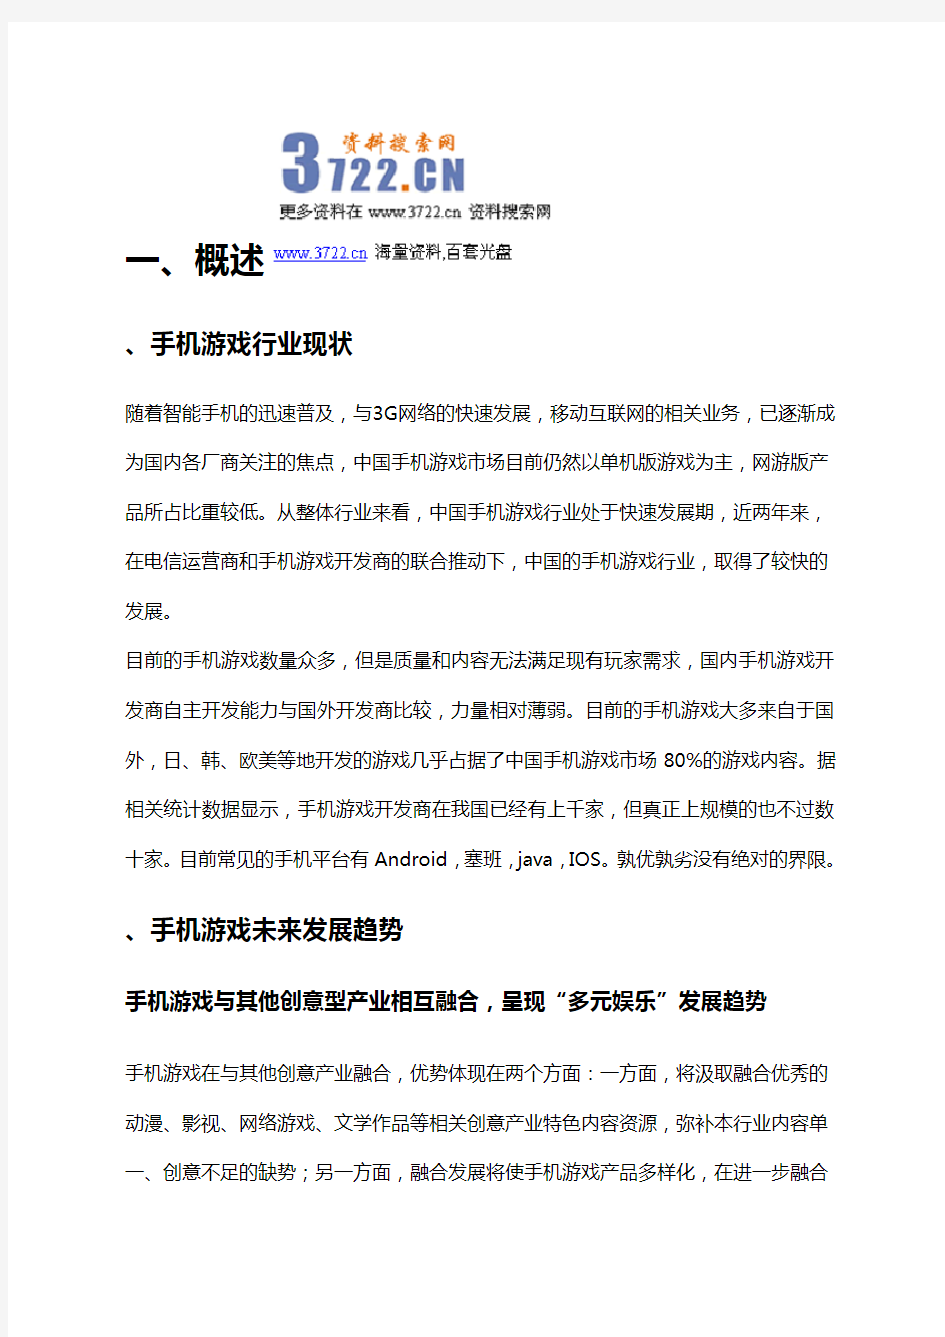 20-204年中国手机游戏市场分析报告(doc 40页)